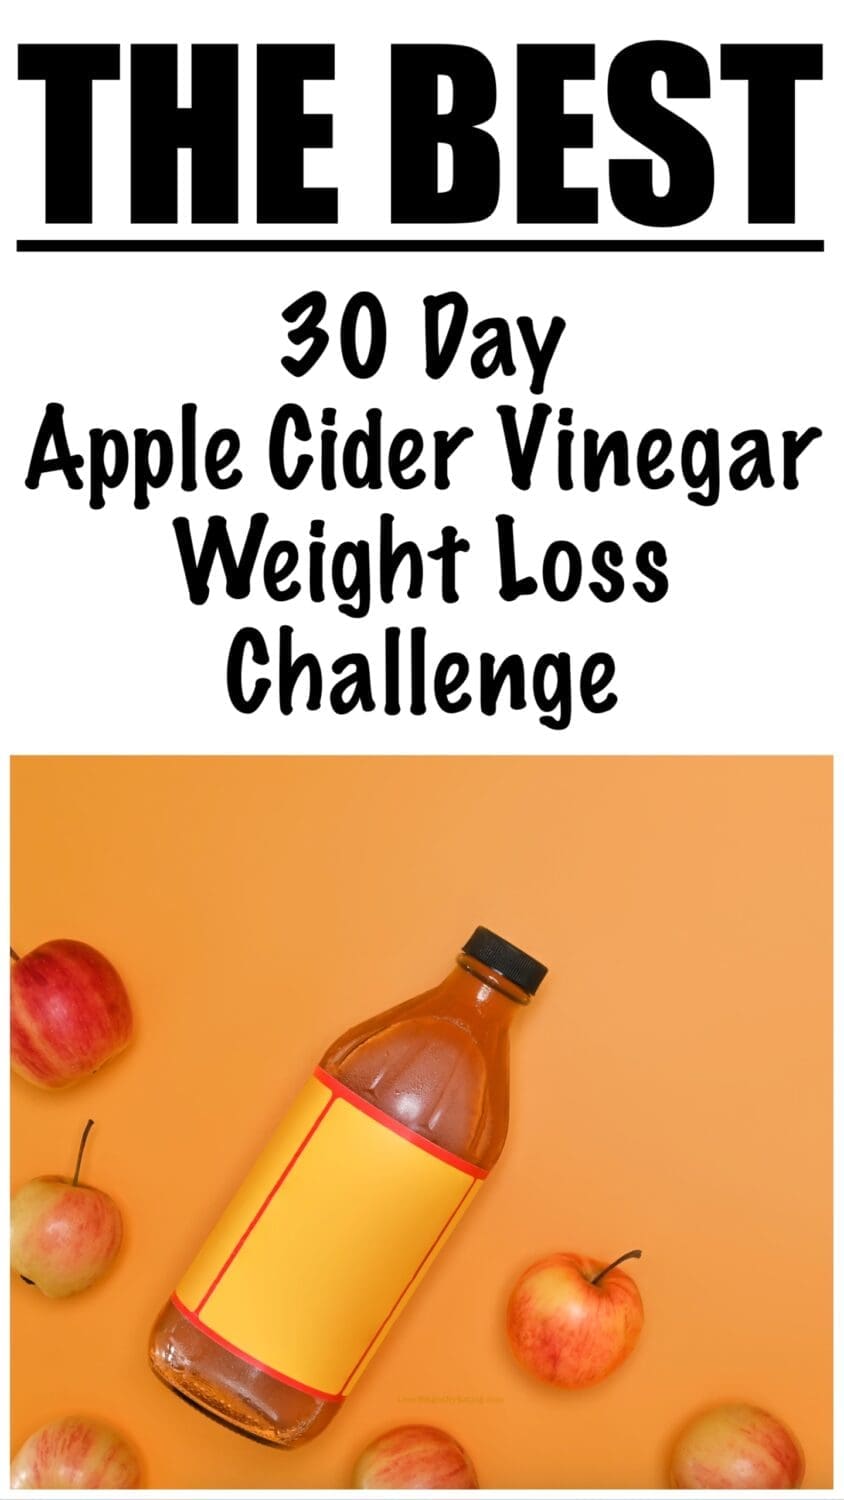 30 Day Apple Cider Vinegar Weight Loss Challenge